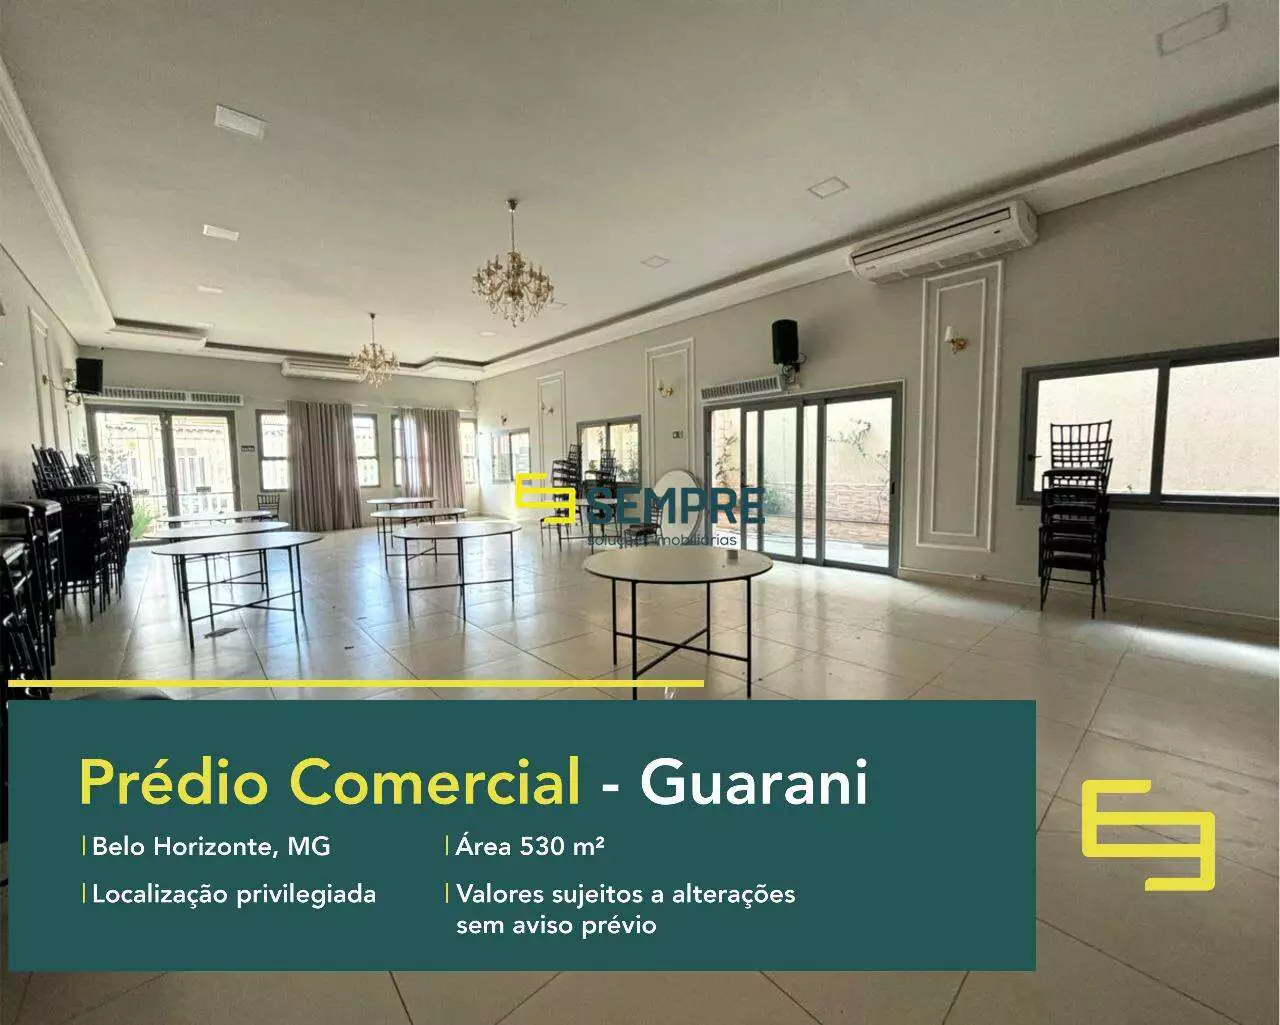 Prédio comercial no Guarani para locação em BH, em excelente localização. O ponto comercial conta com área de 530 m².